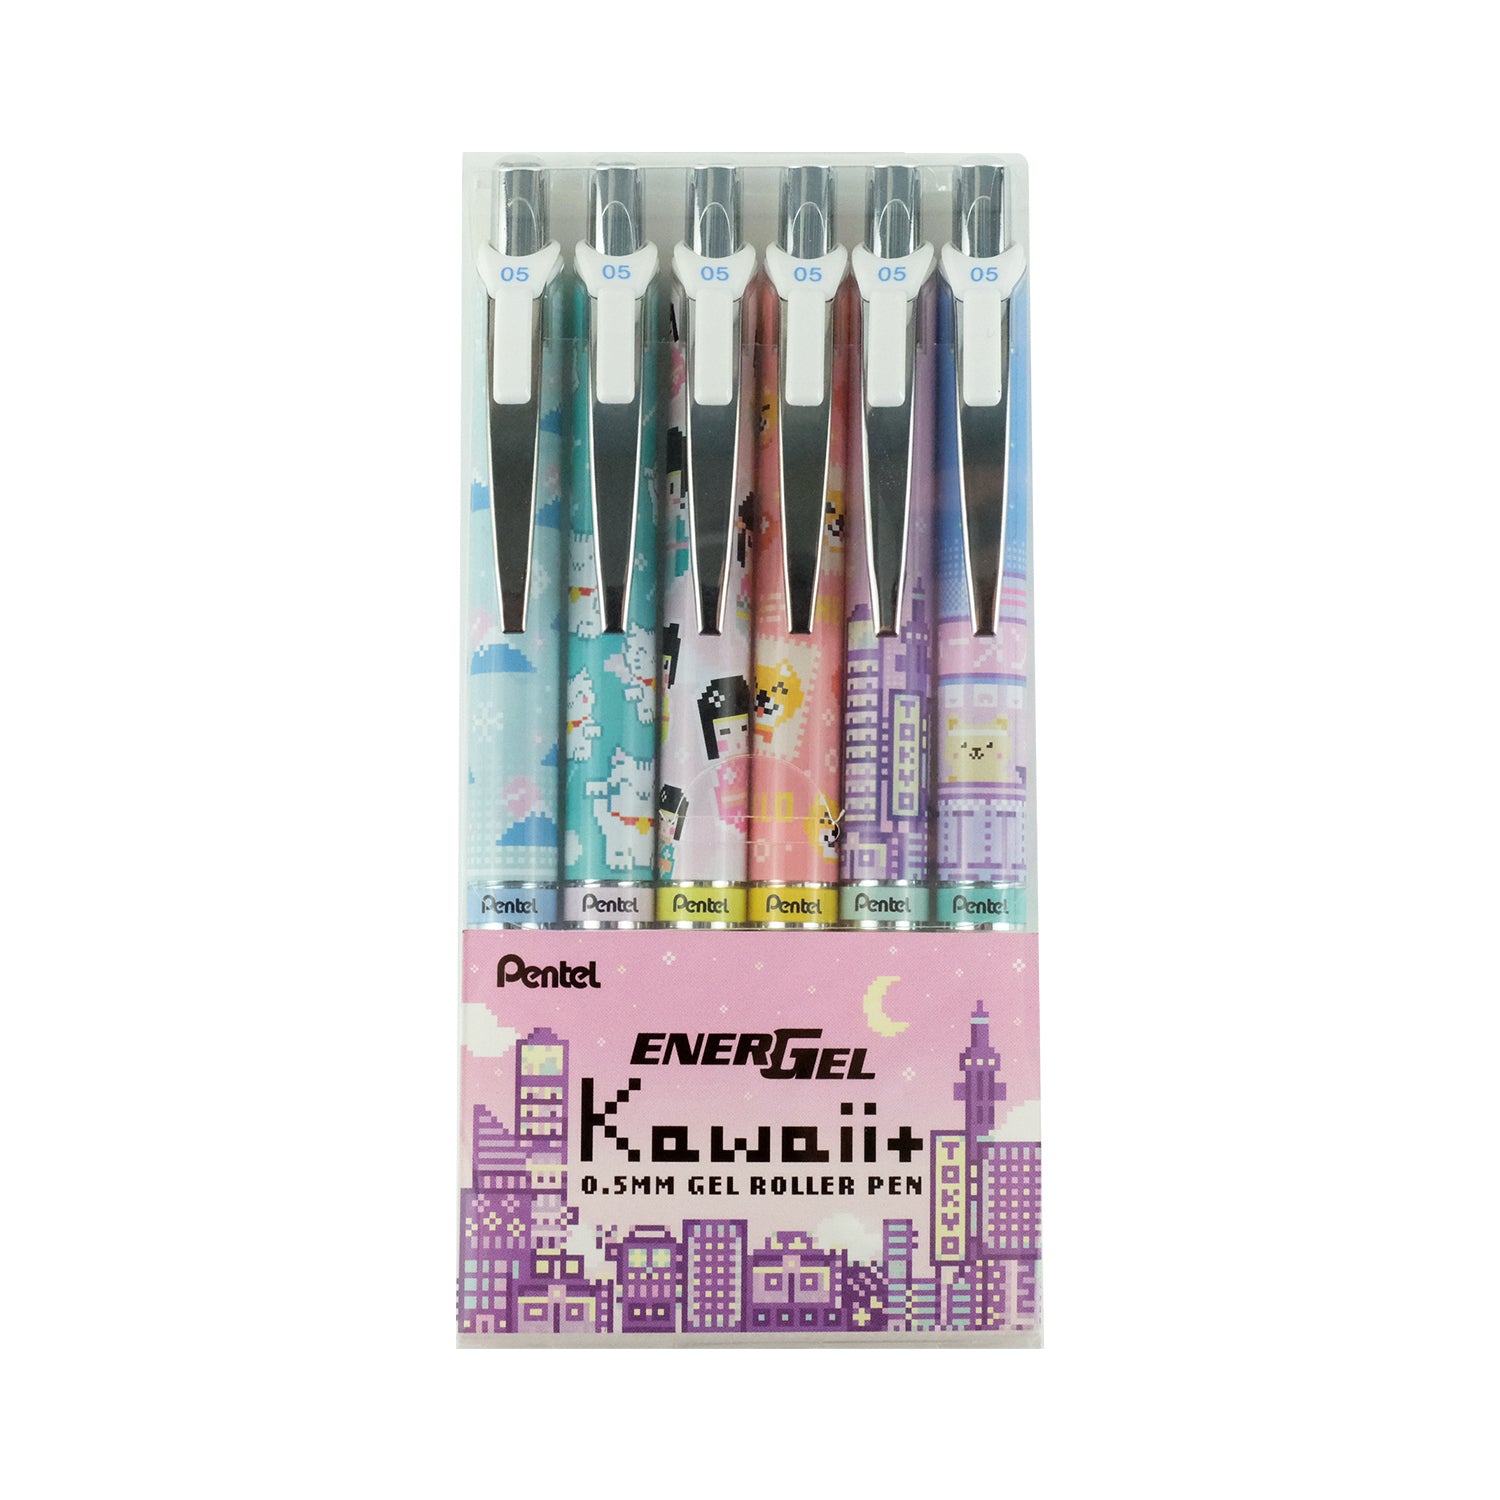 Pentel EnerGel Kawaii+ Pen 0.5mm - JULY NEW, PEN, PENTEL, SALE